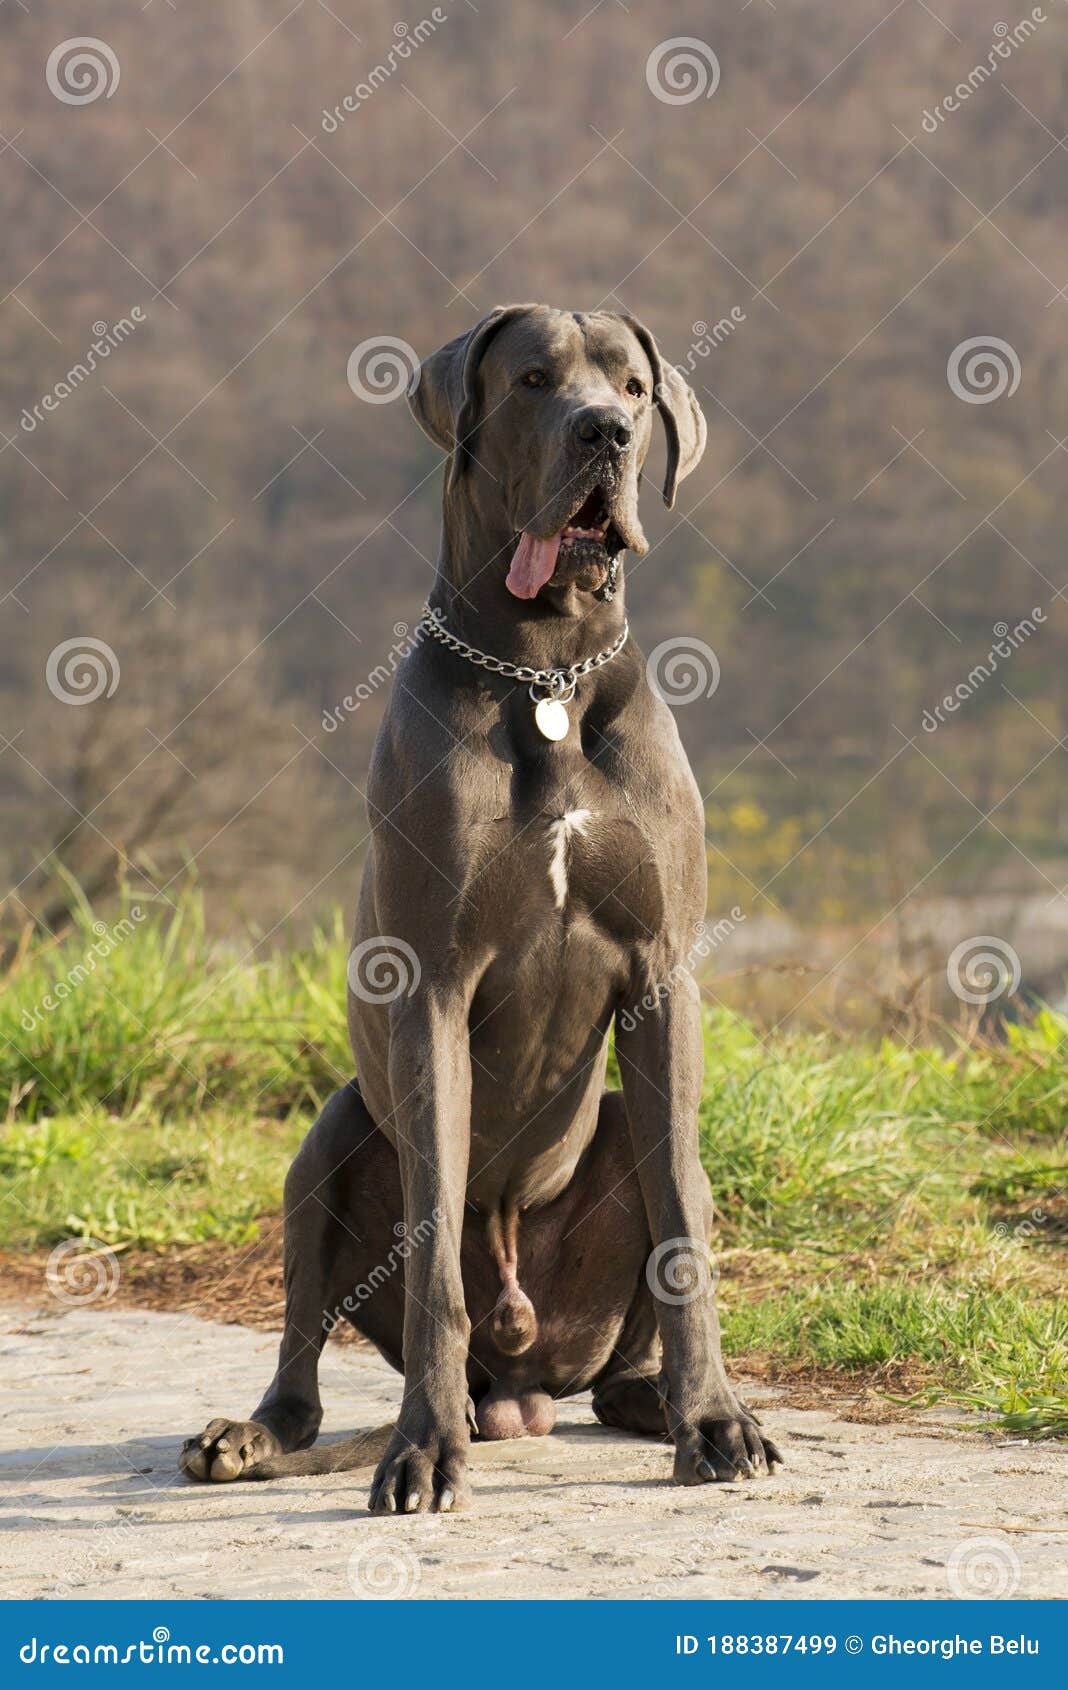 statistieken eigenaar genoeg Mooie Grijze Hond Die in Het Gras Zit En in De Natuur Kijkt Stock  Afbeelding - Image of blauw, horizon: 188387499